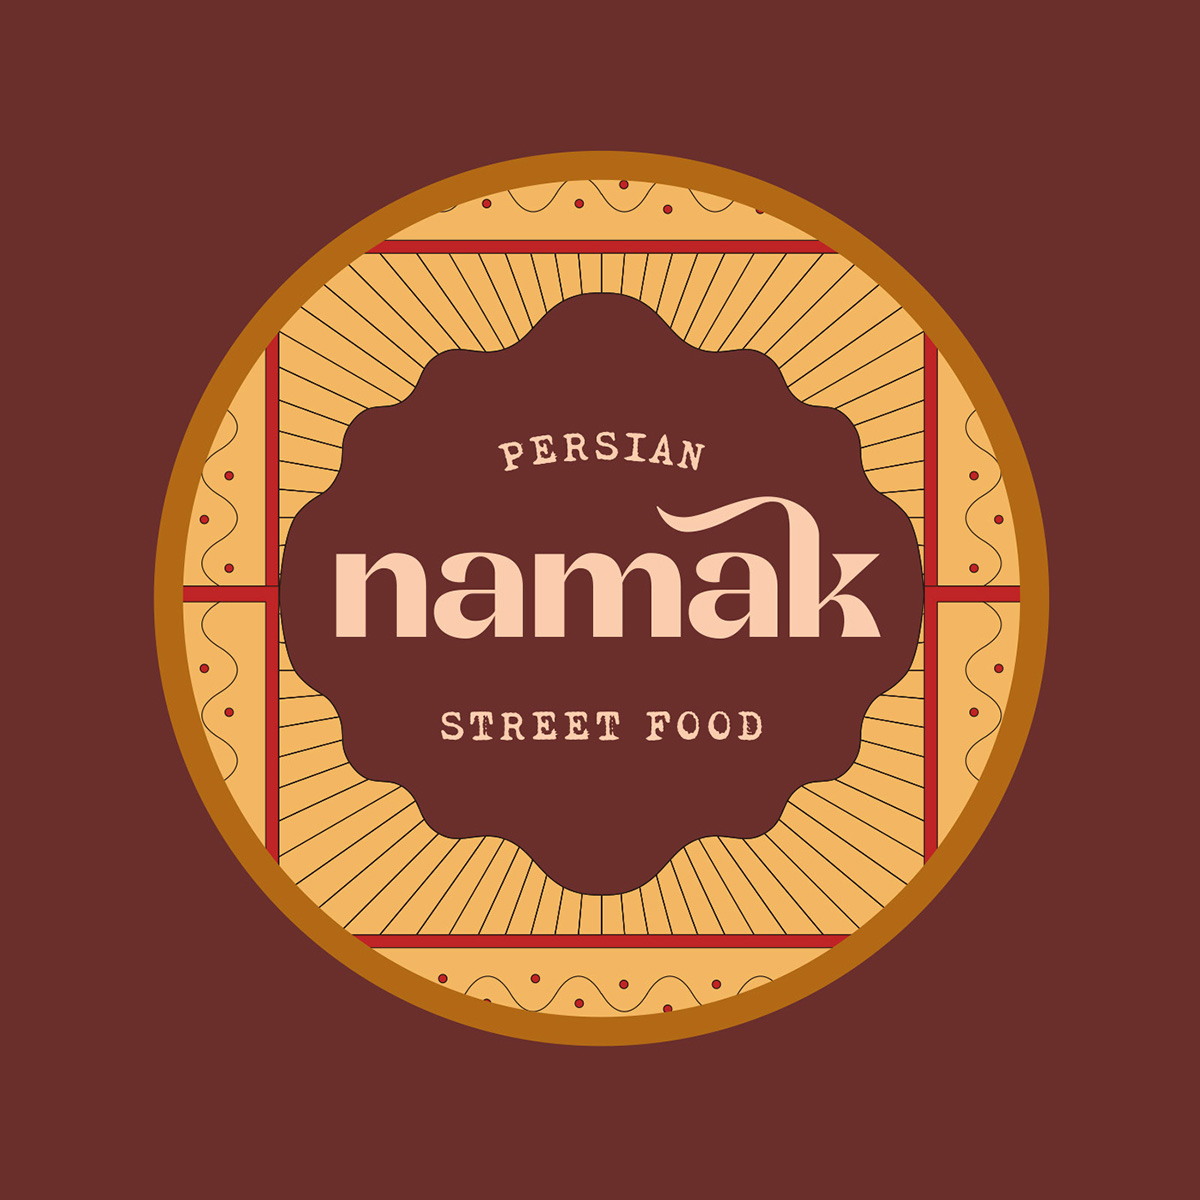 Création logo et branding pour un restaurant de streetfood perse